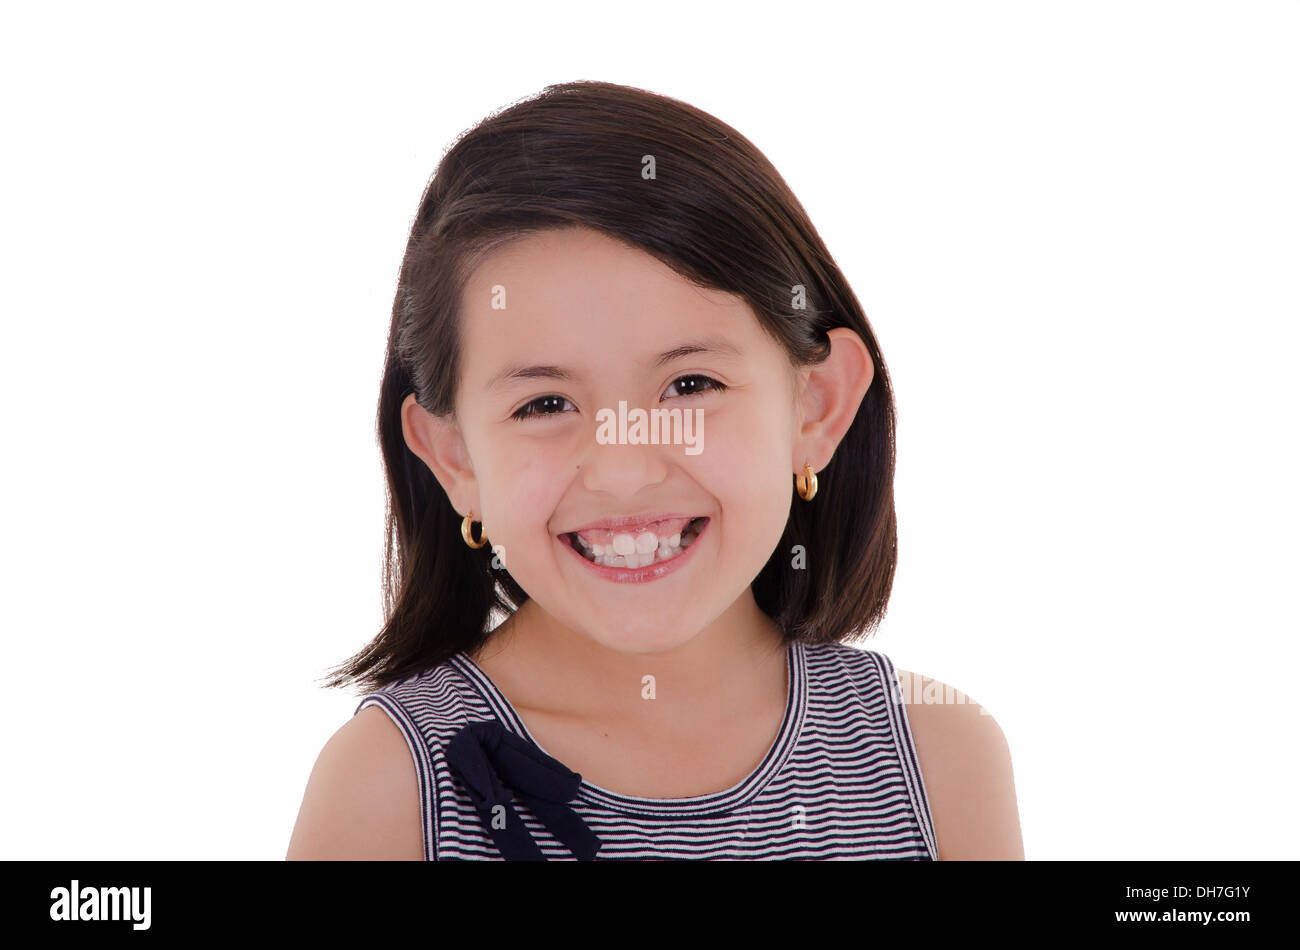 Glücklich Latin Girl Portrait lächelnd - isoliert auf einem weißen Hintergrund Stockfoto